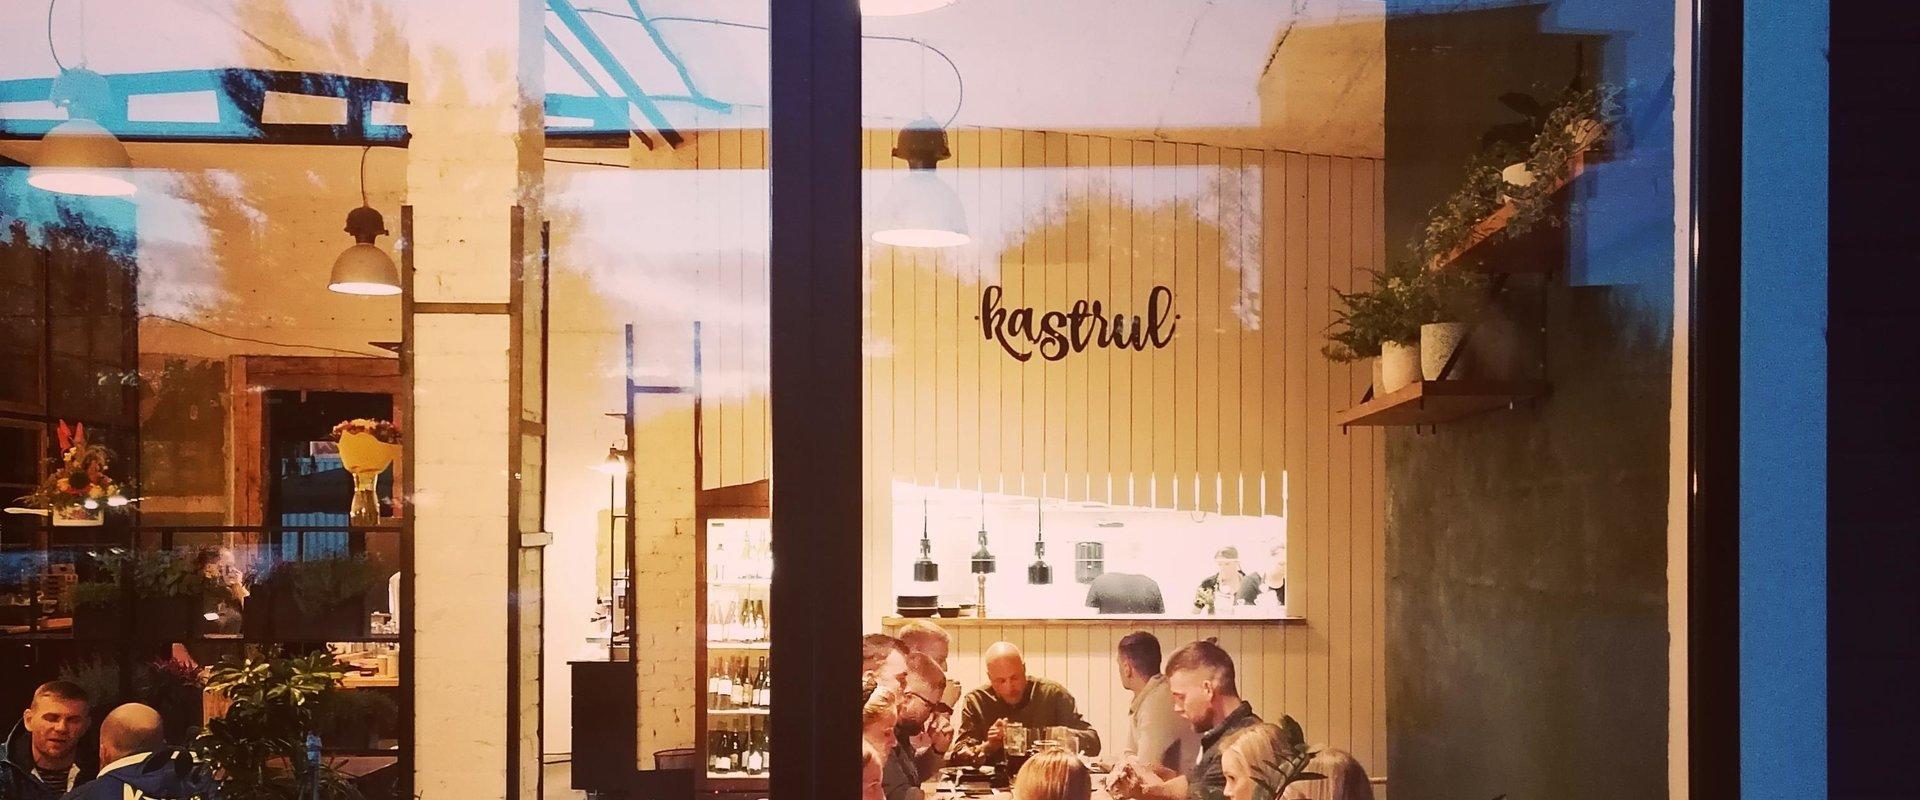 Das Kastrul ist ein Café am Fluss Pärnu, das heimische Speisen serviert, die von der asiatischen und mediterranen Küche beeinflusst sind. Lokale Rohst